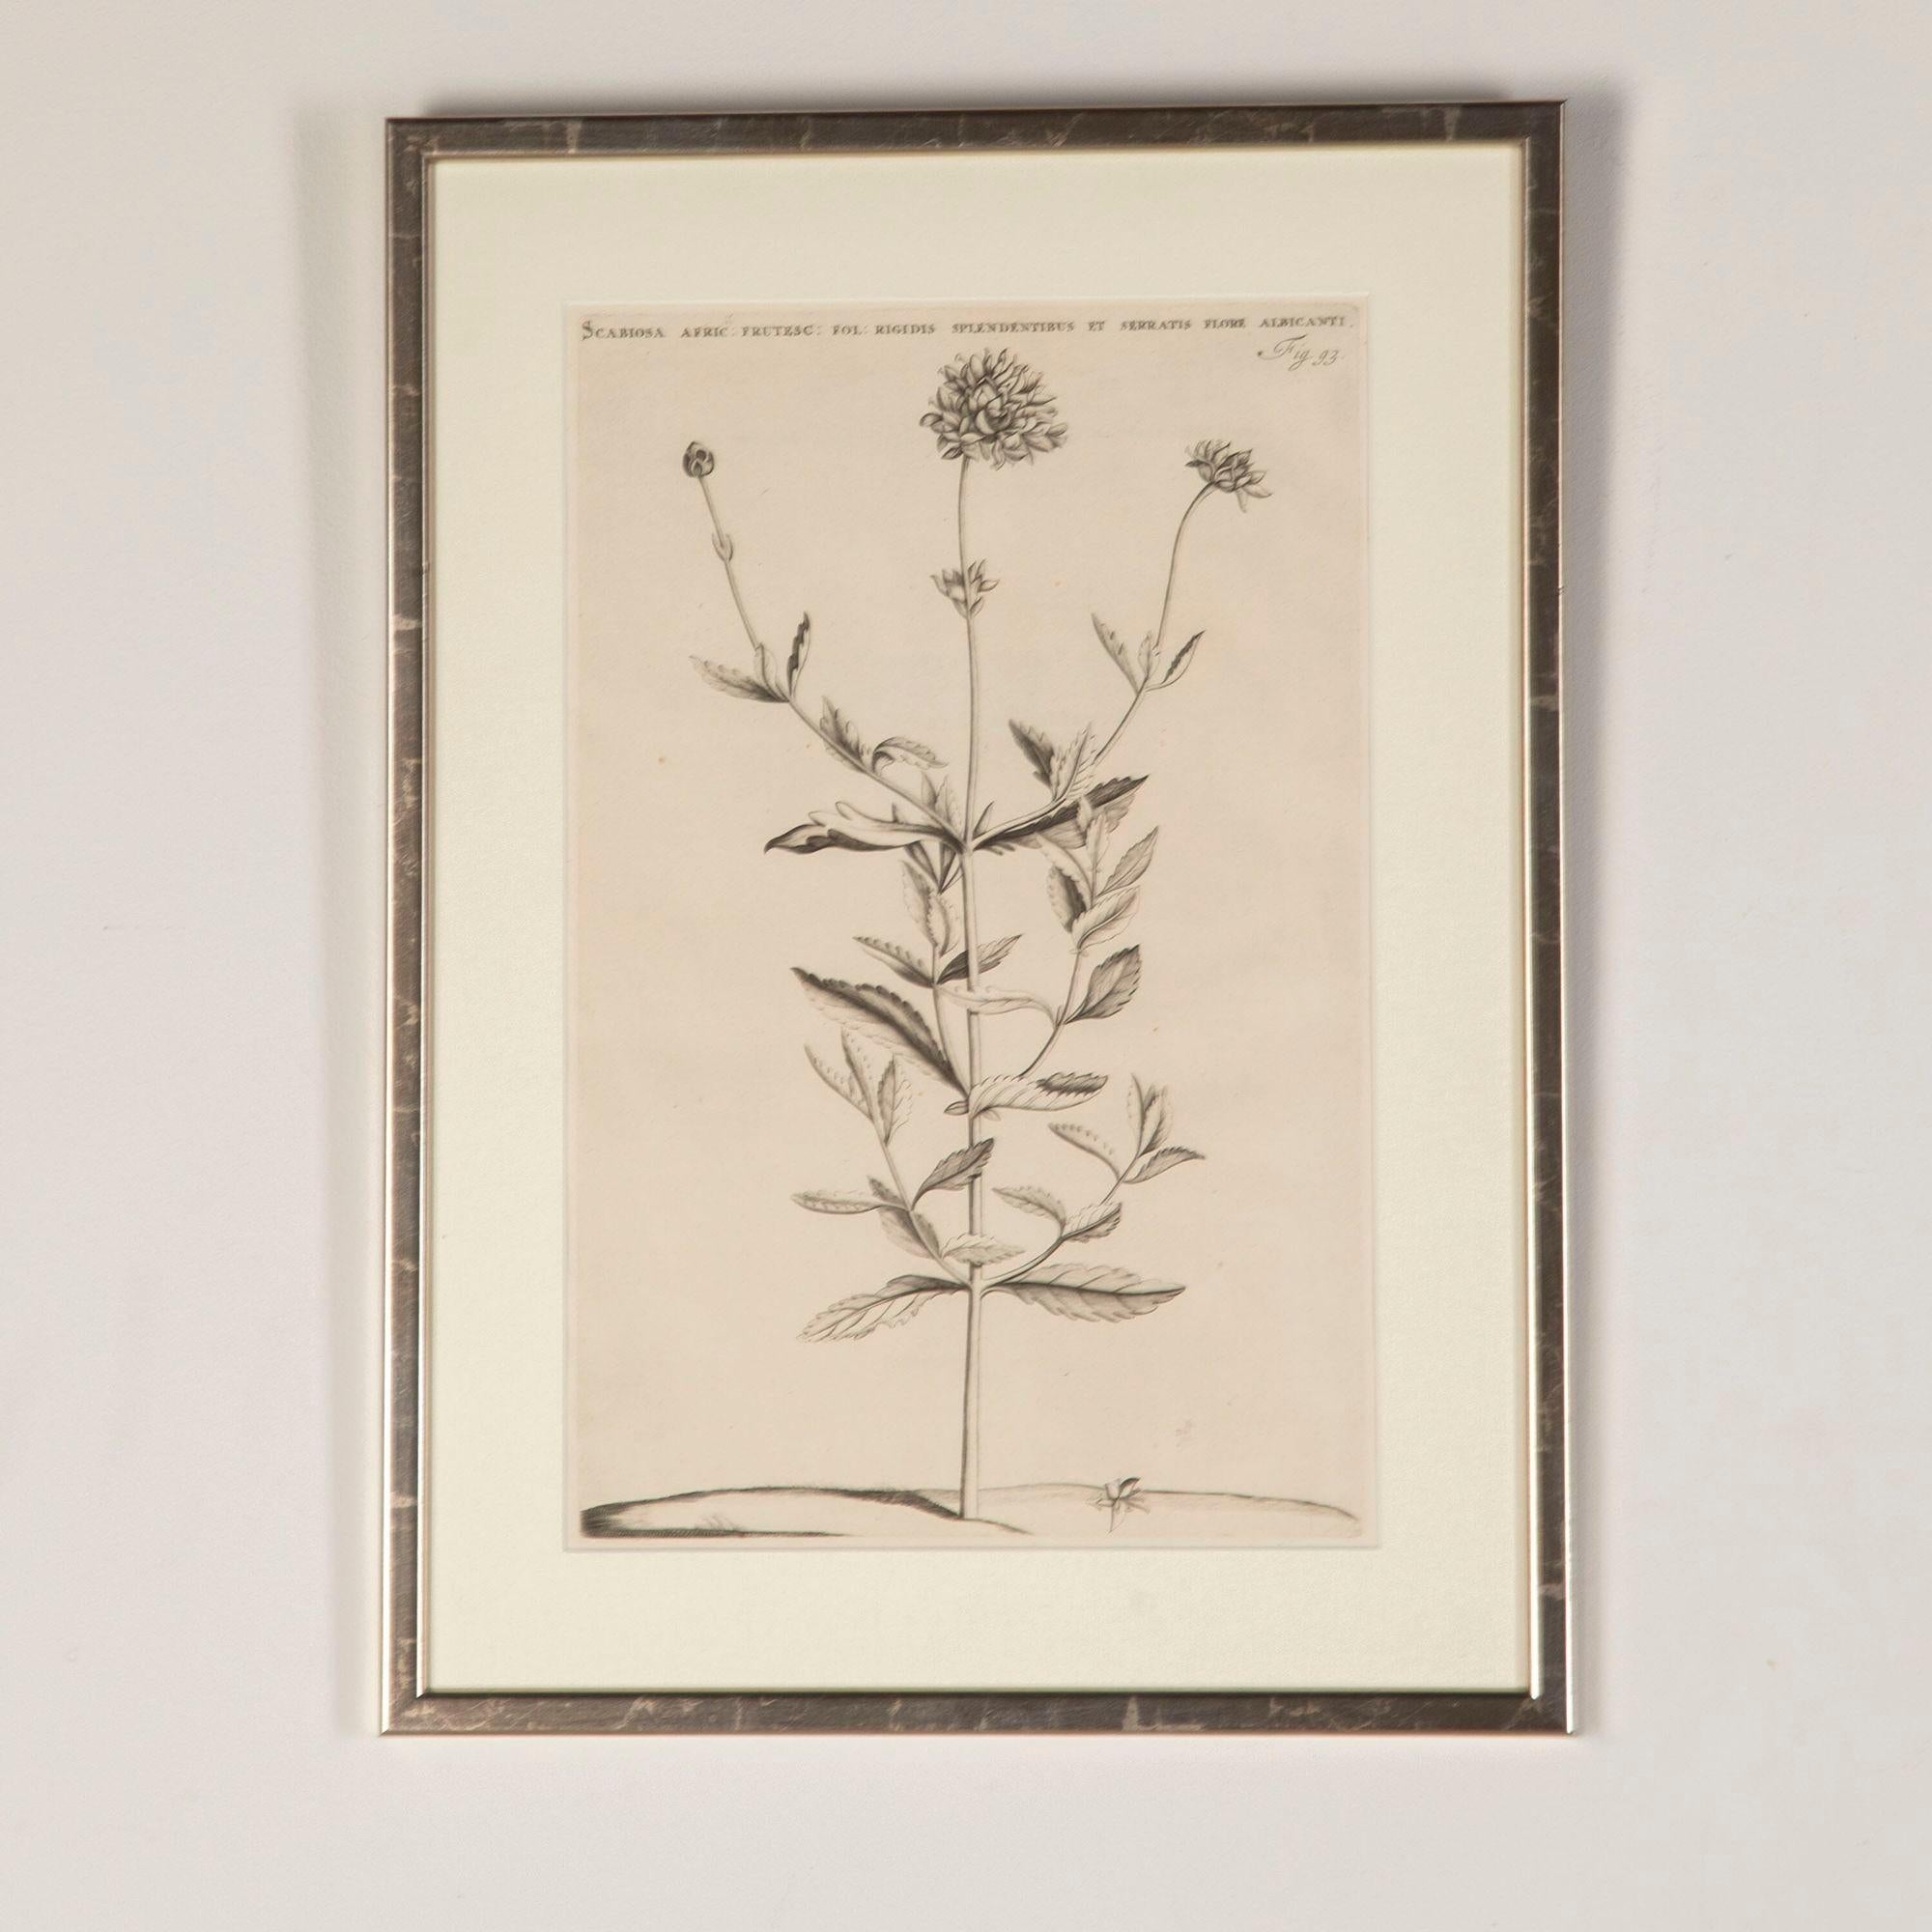 Bel ensemble de six gravures botaniques du 17e siècle par Jan et Caspar Commelin.
Présentées dans des cadres argentés avec des montures en toile de jute et du verre artistique AR70 pour une clarté optimale.
Jan Coloni (1629-1692) était le directeur